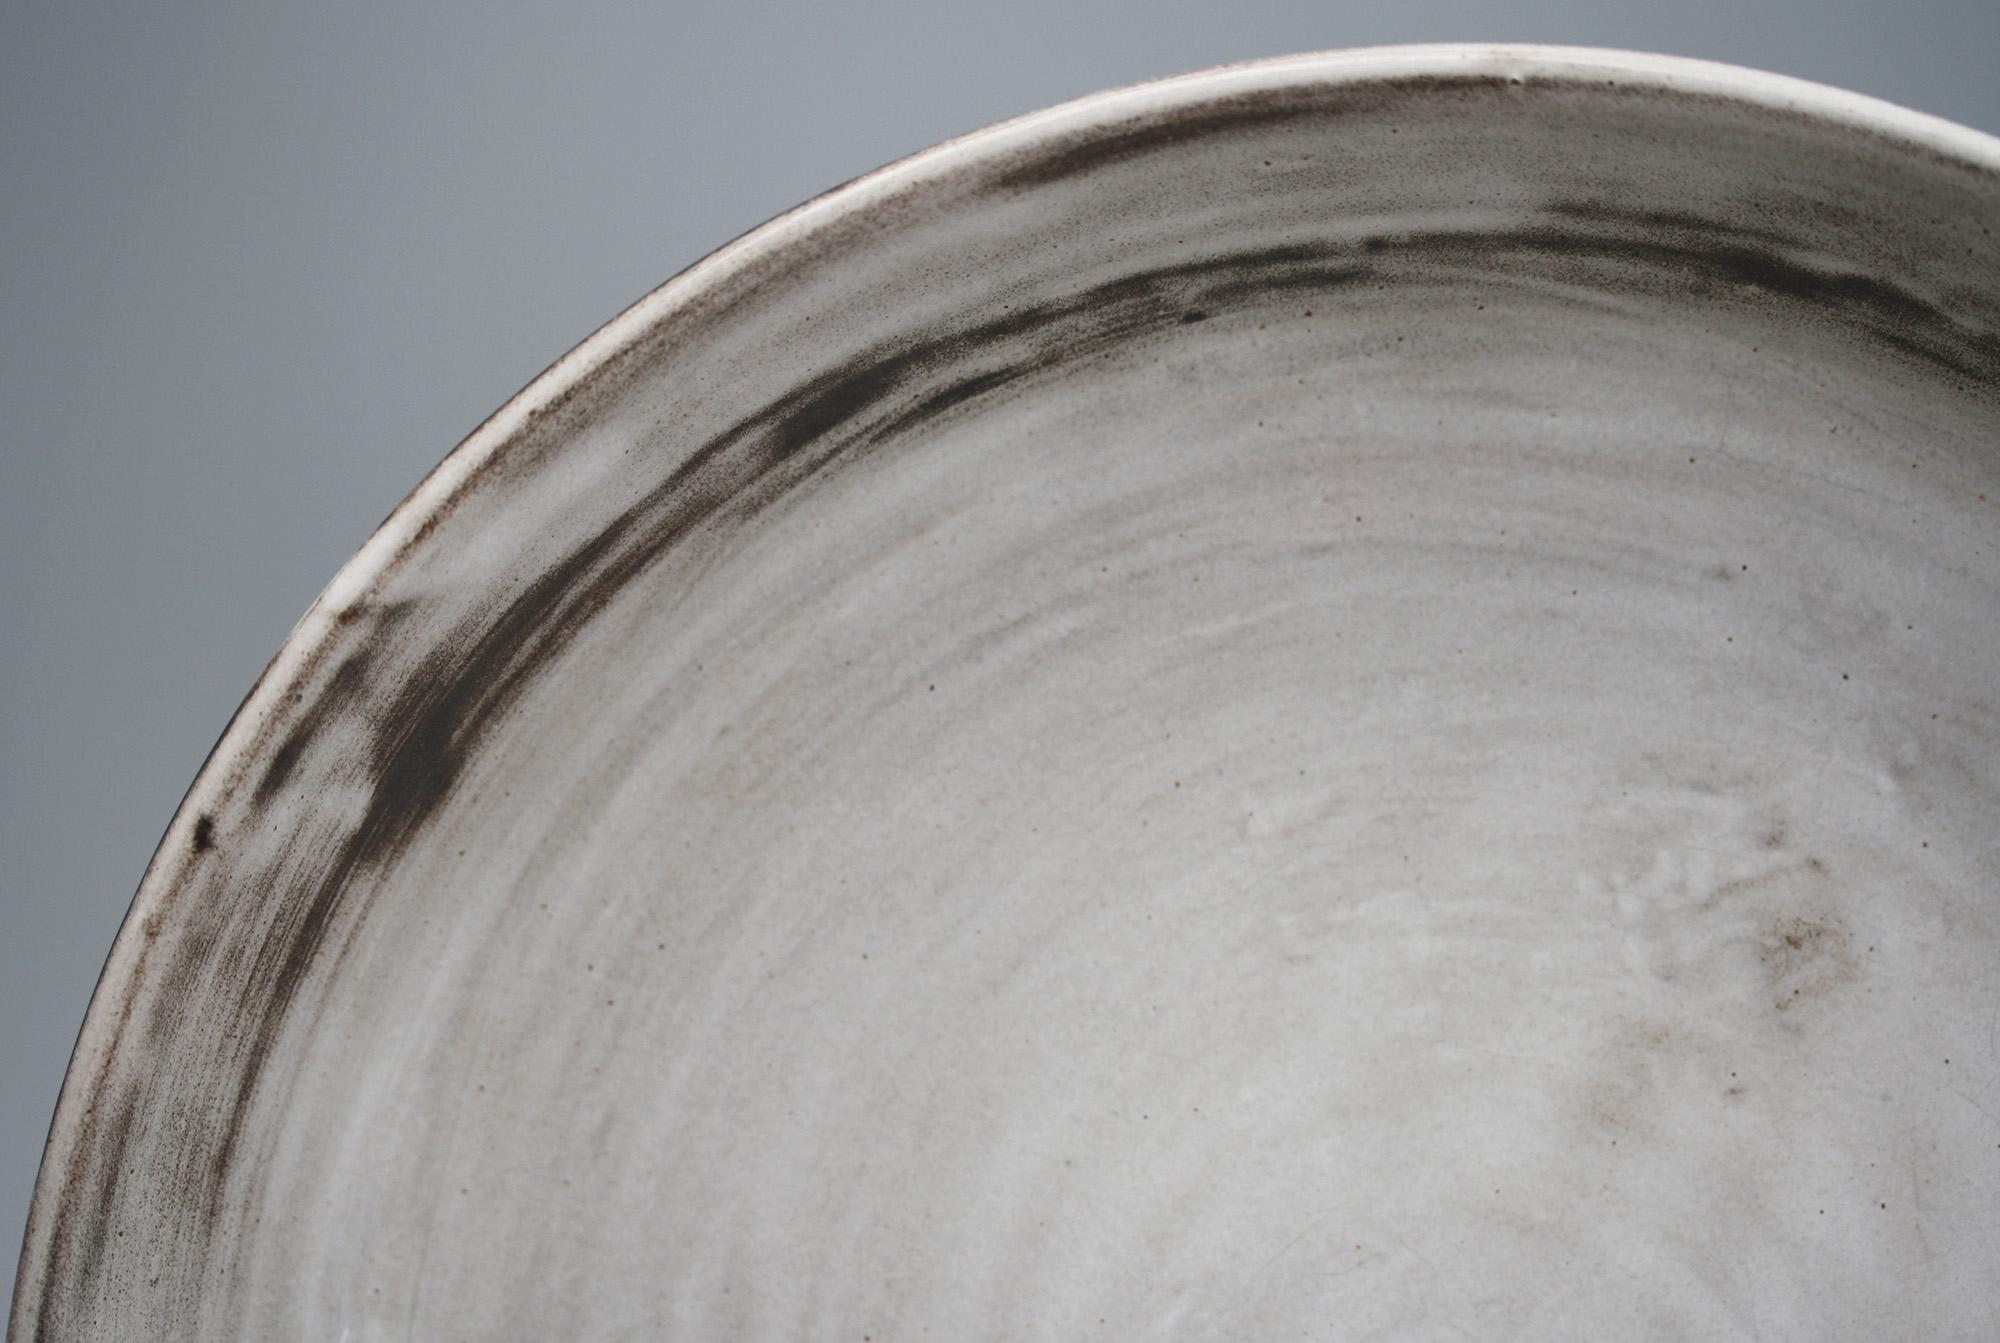 Eine schöne große flache Schale aus Studiotöpferware mit grauer und schwarzer Schlickglasur von Angete Hoy (2014-2000), die vermutlich aus den 1950er Jahren stammt. Die Schale aus rotem Ton hat eine breite, flache, abgerundete Form mit einem